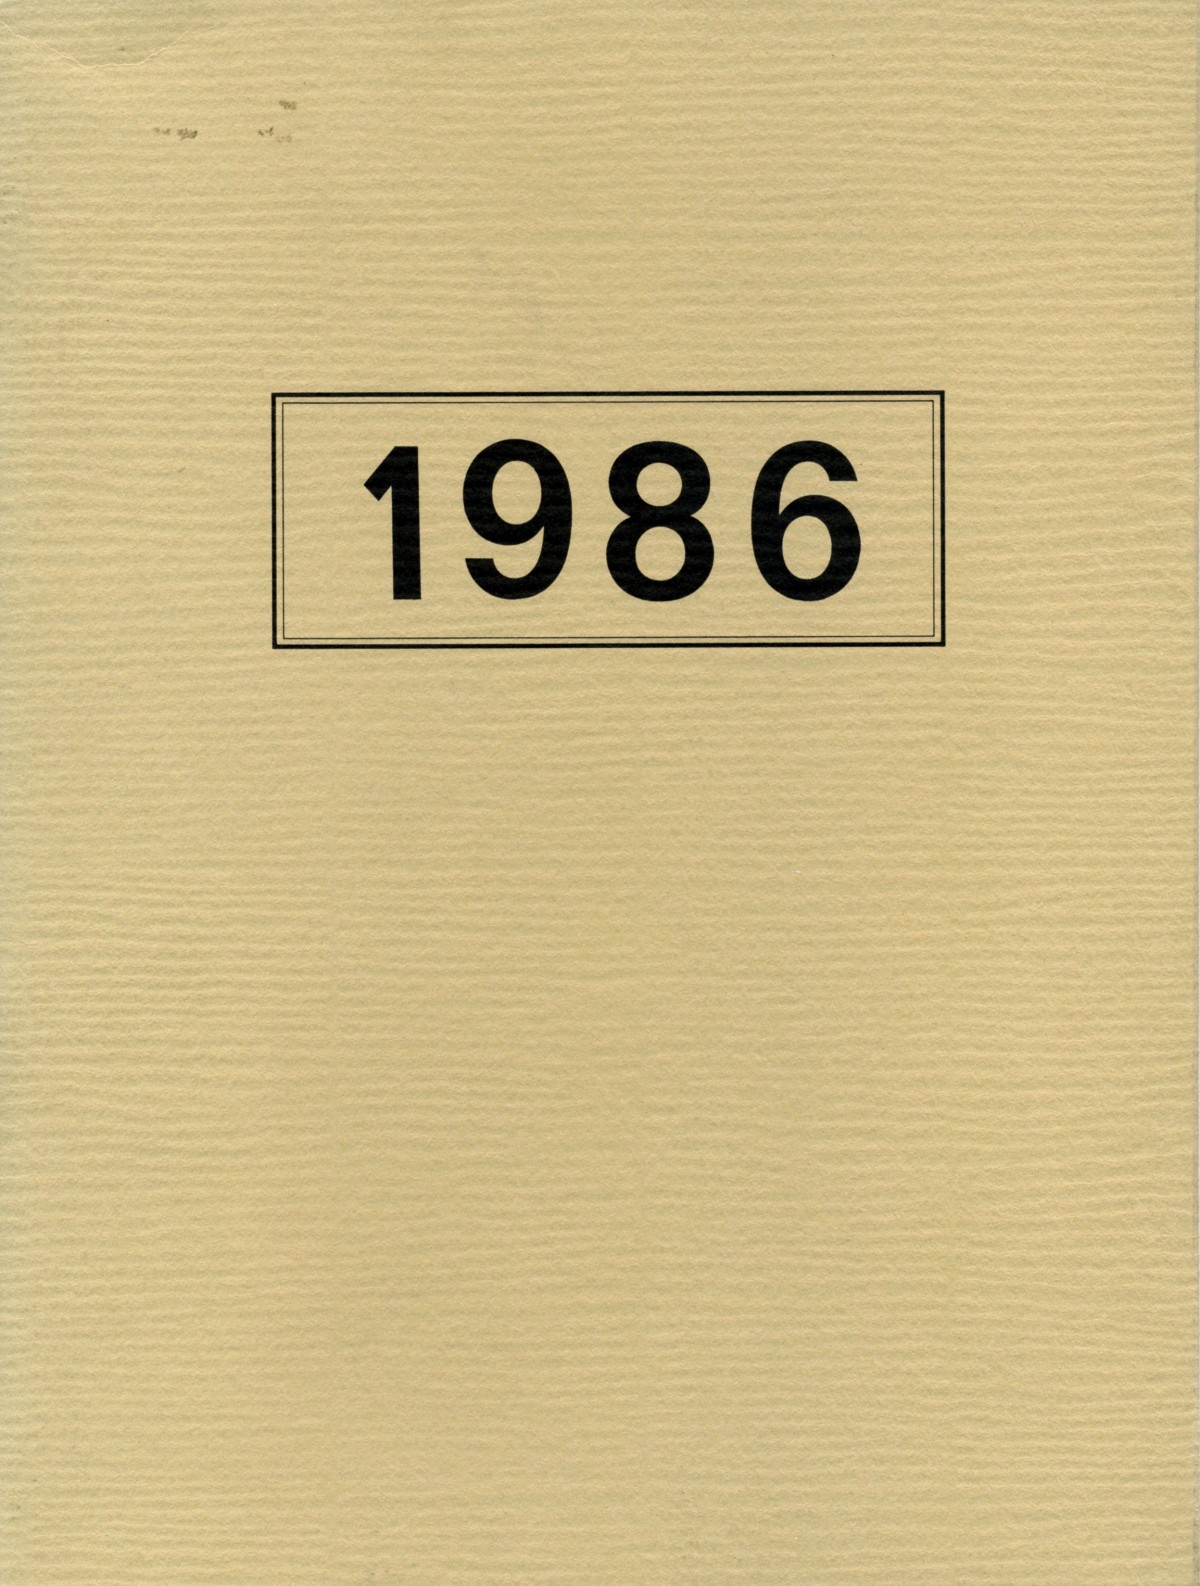 1986_françoise-paviot